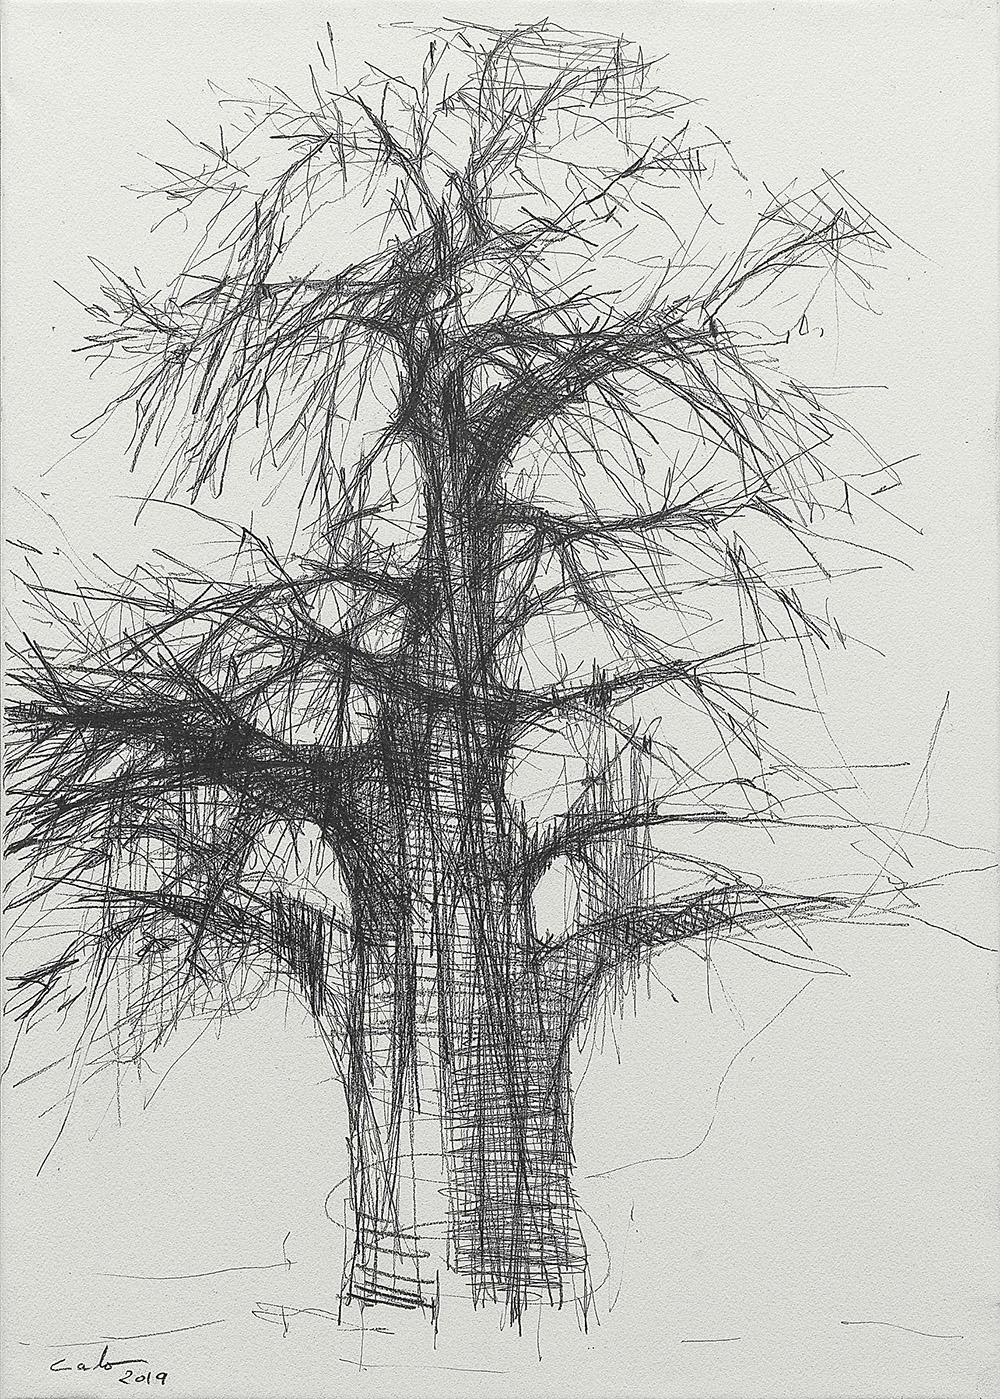 Baobab N3 ist eine einzigartige Graphitzeichnung des zeitgenössischen Künstlers Calo Carratalá auf Papier in einem Holzrahmen mit den Maßen 65 × 46 cm. Abmessungen des gerahmten Kunstwerks (Methacrylatbox): 67 cm x 48 cm x 4 cm (26,3 x 18,8 x 1,5